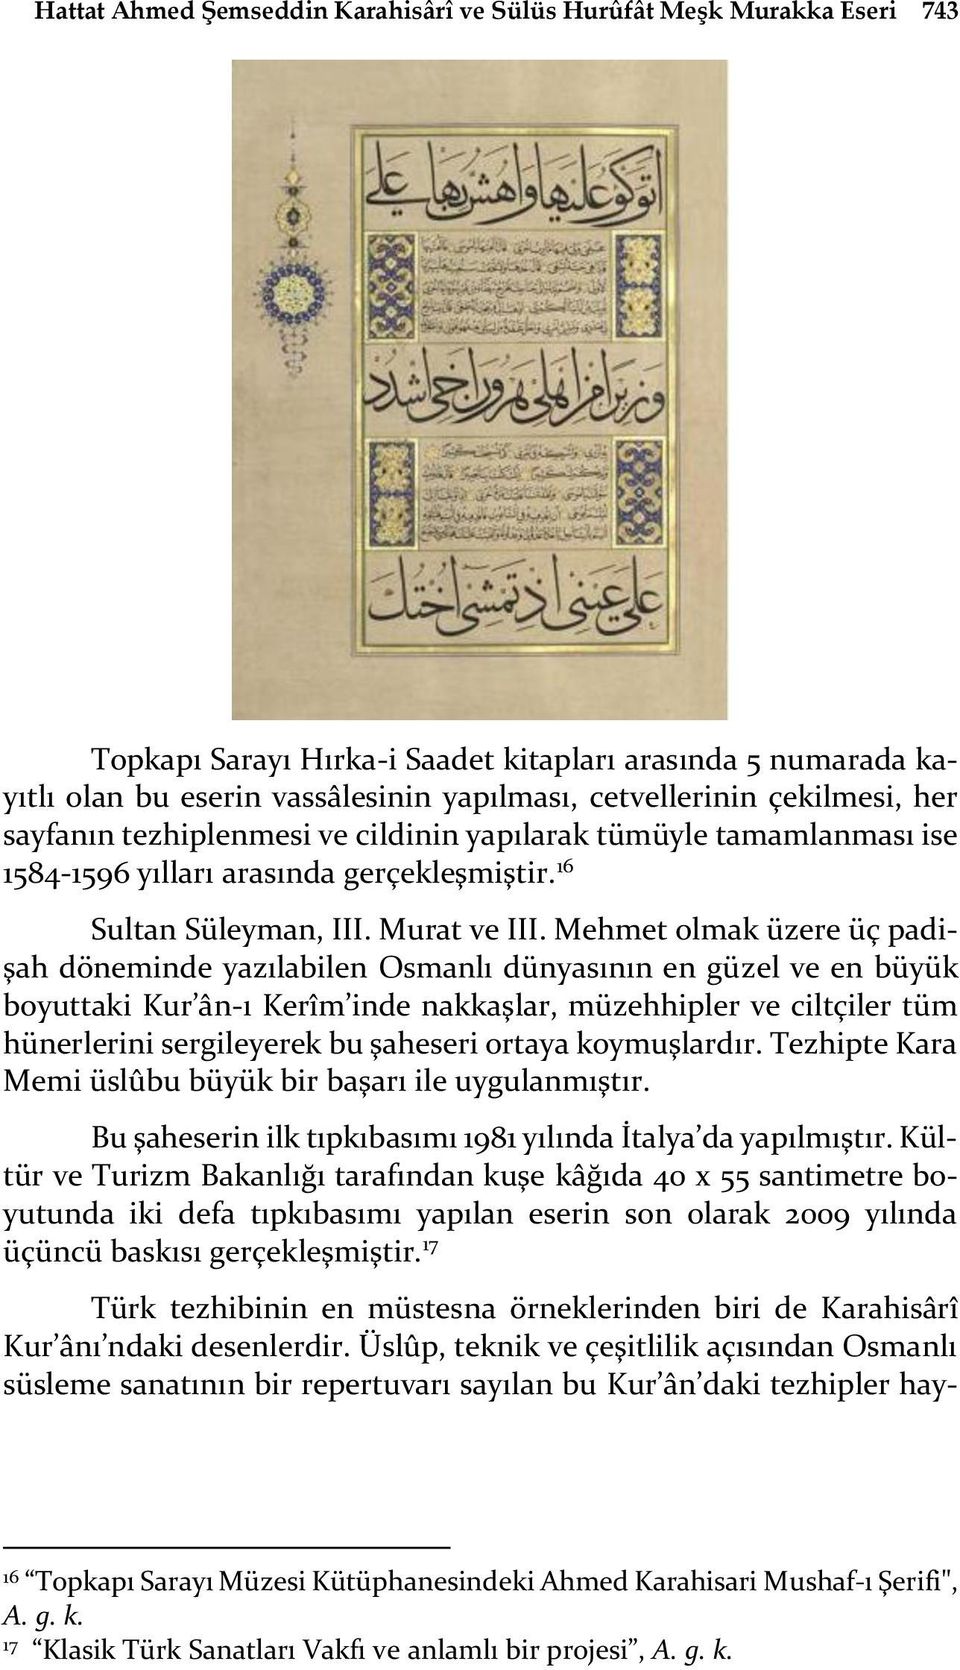 Mehmet olmak üzere üç padişah döneminde yazılabilen Osmanlı dünyasının en güzel ve en büyük boyuttaki Kur ân-ı Kerîm inde nakkaşlar, müzehhipler ve ciltçiler tüm hünerlerini sergileyerek bu şaheseri